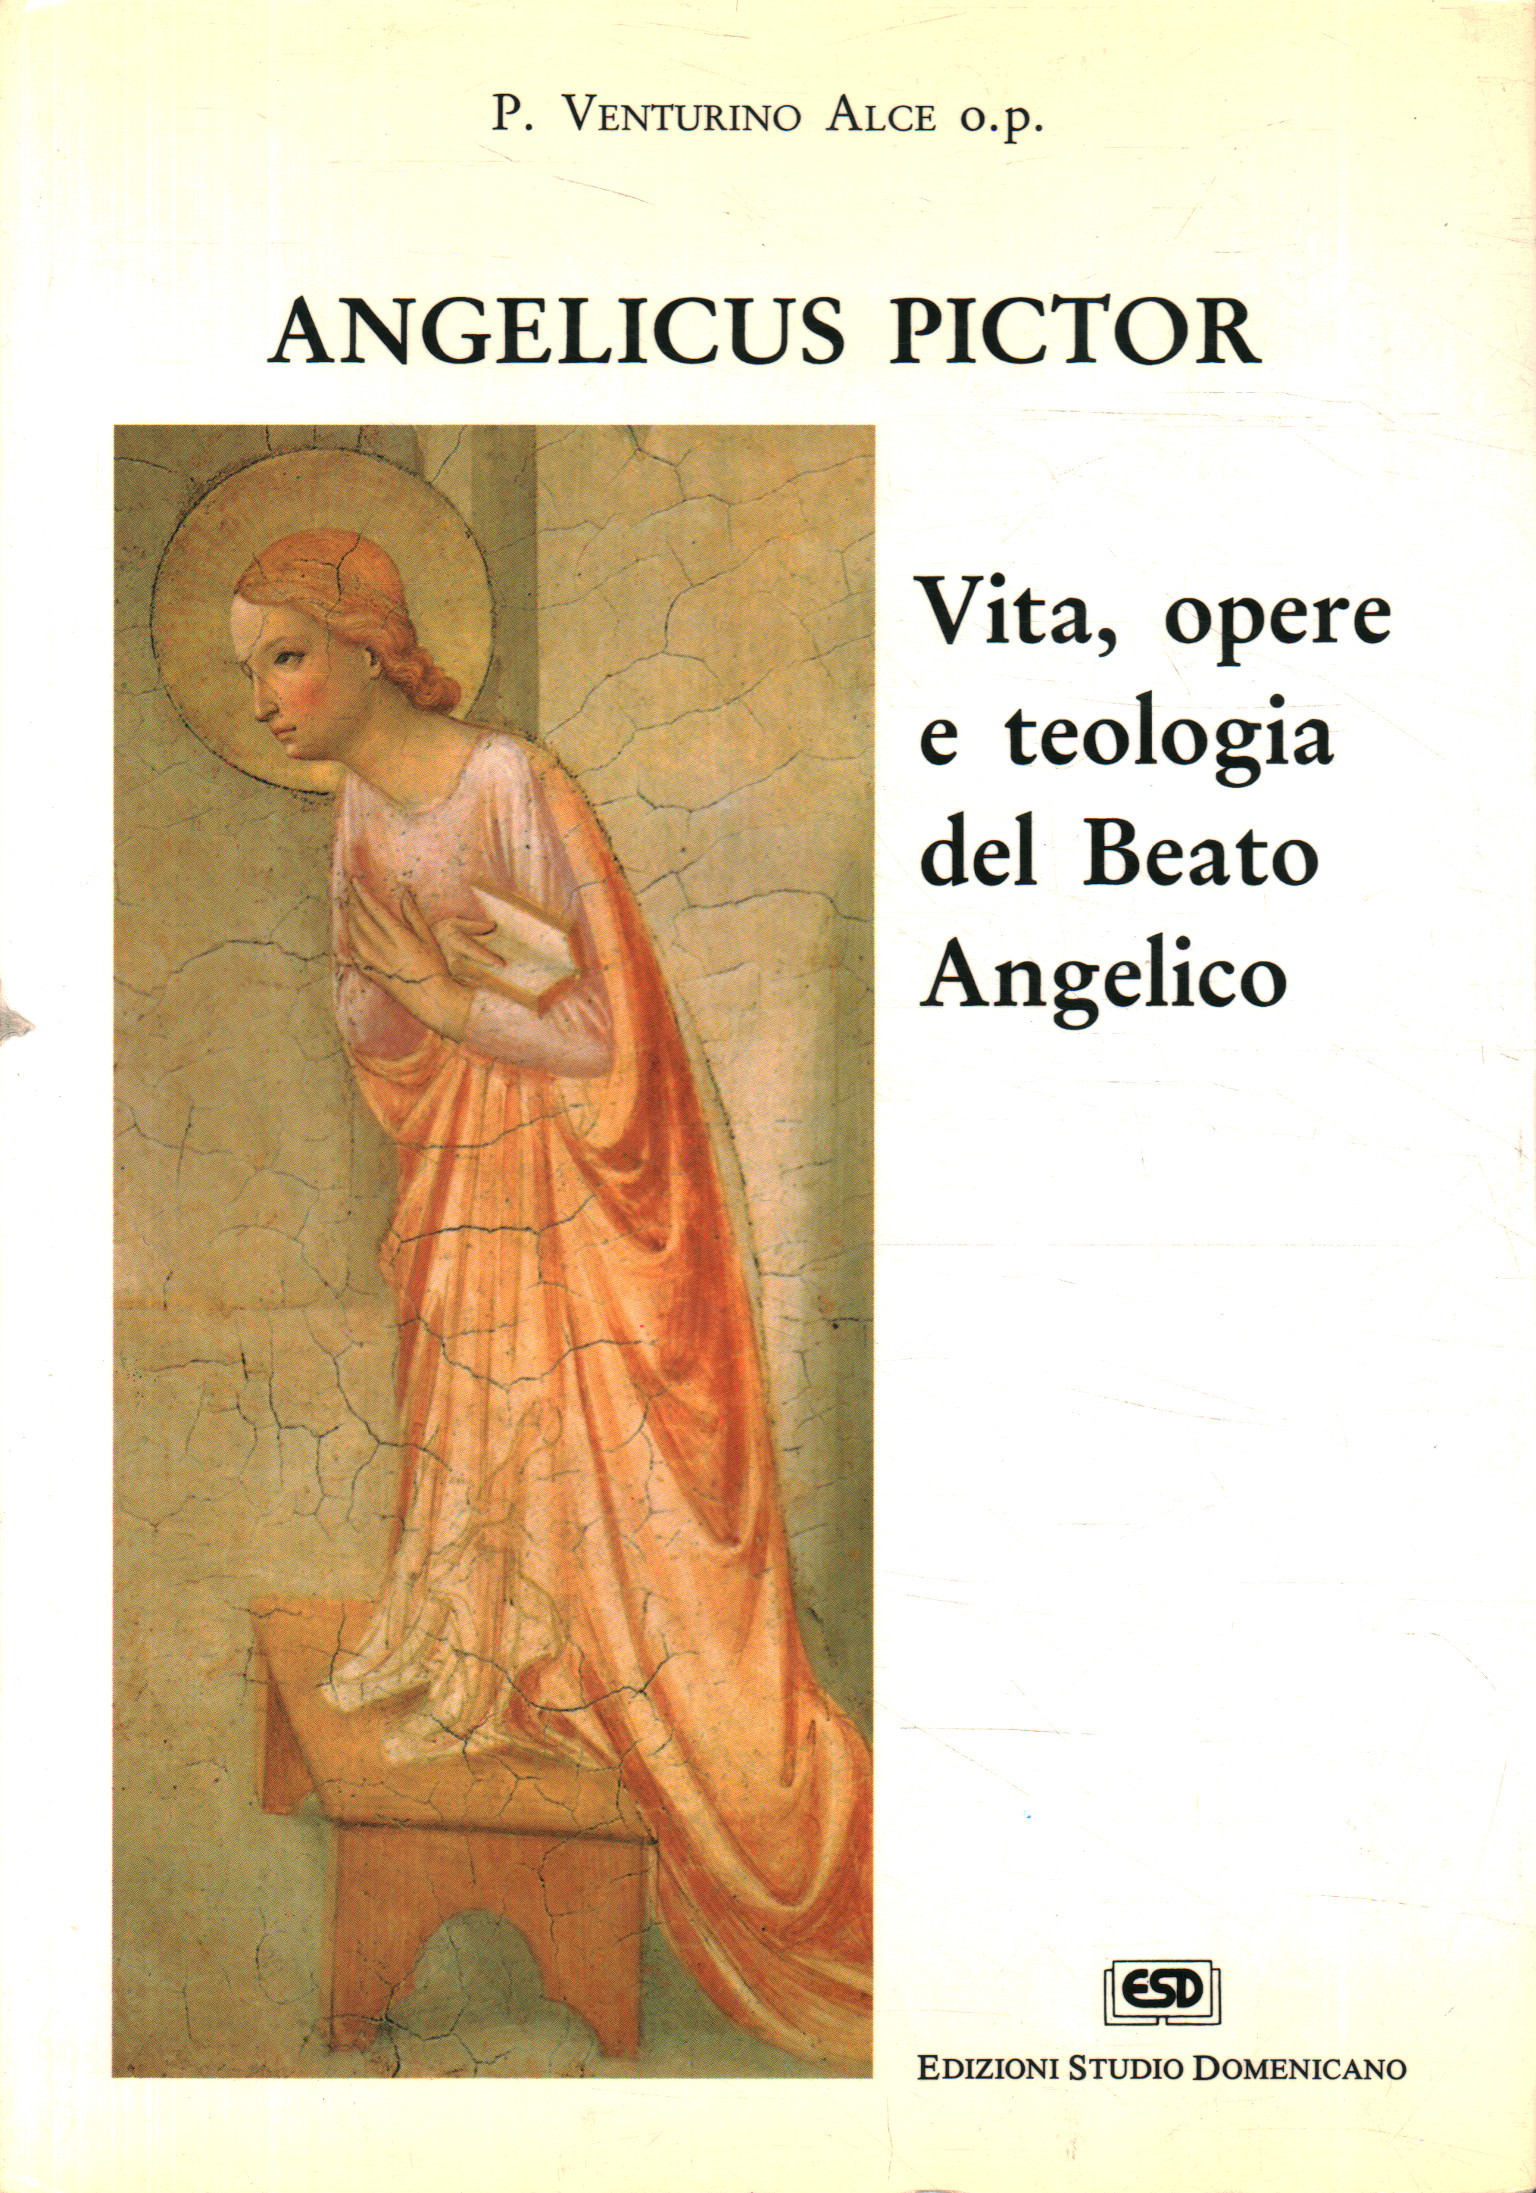 Angélico Pictor. Obras de vida y teología.